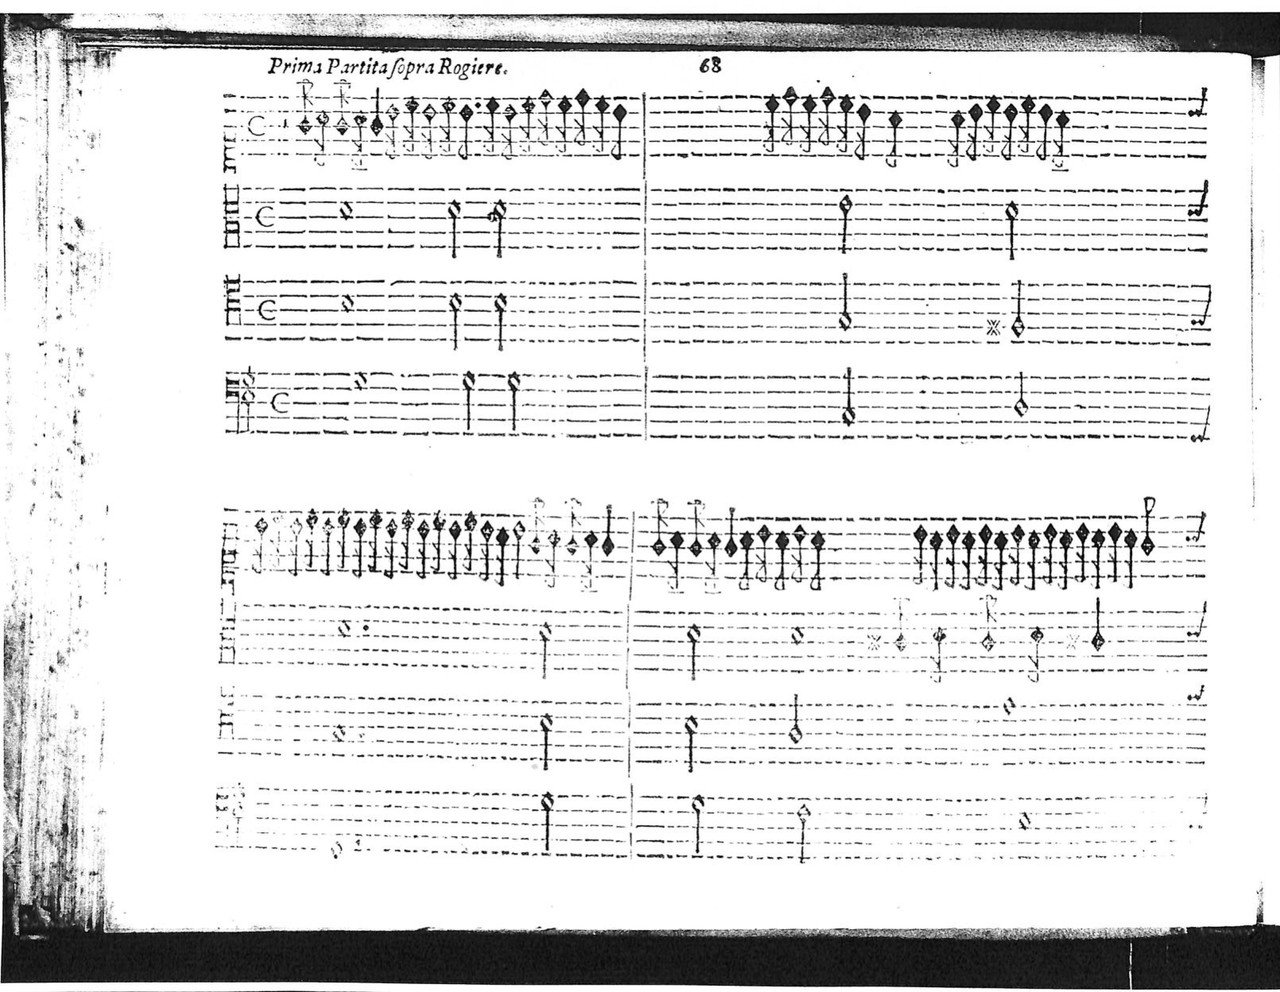 鍵盤楽器音楽の歴史 28 ルッジェーロ 影踏丸 Note